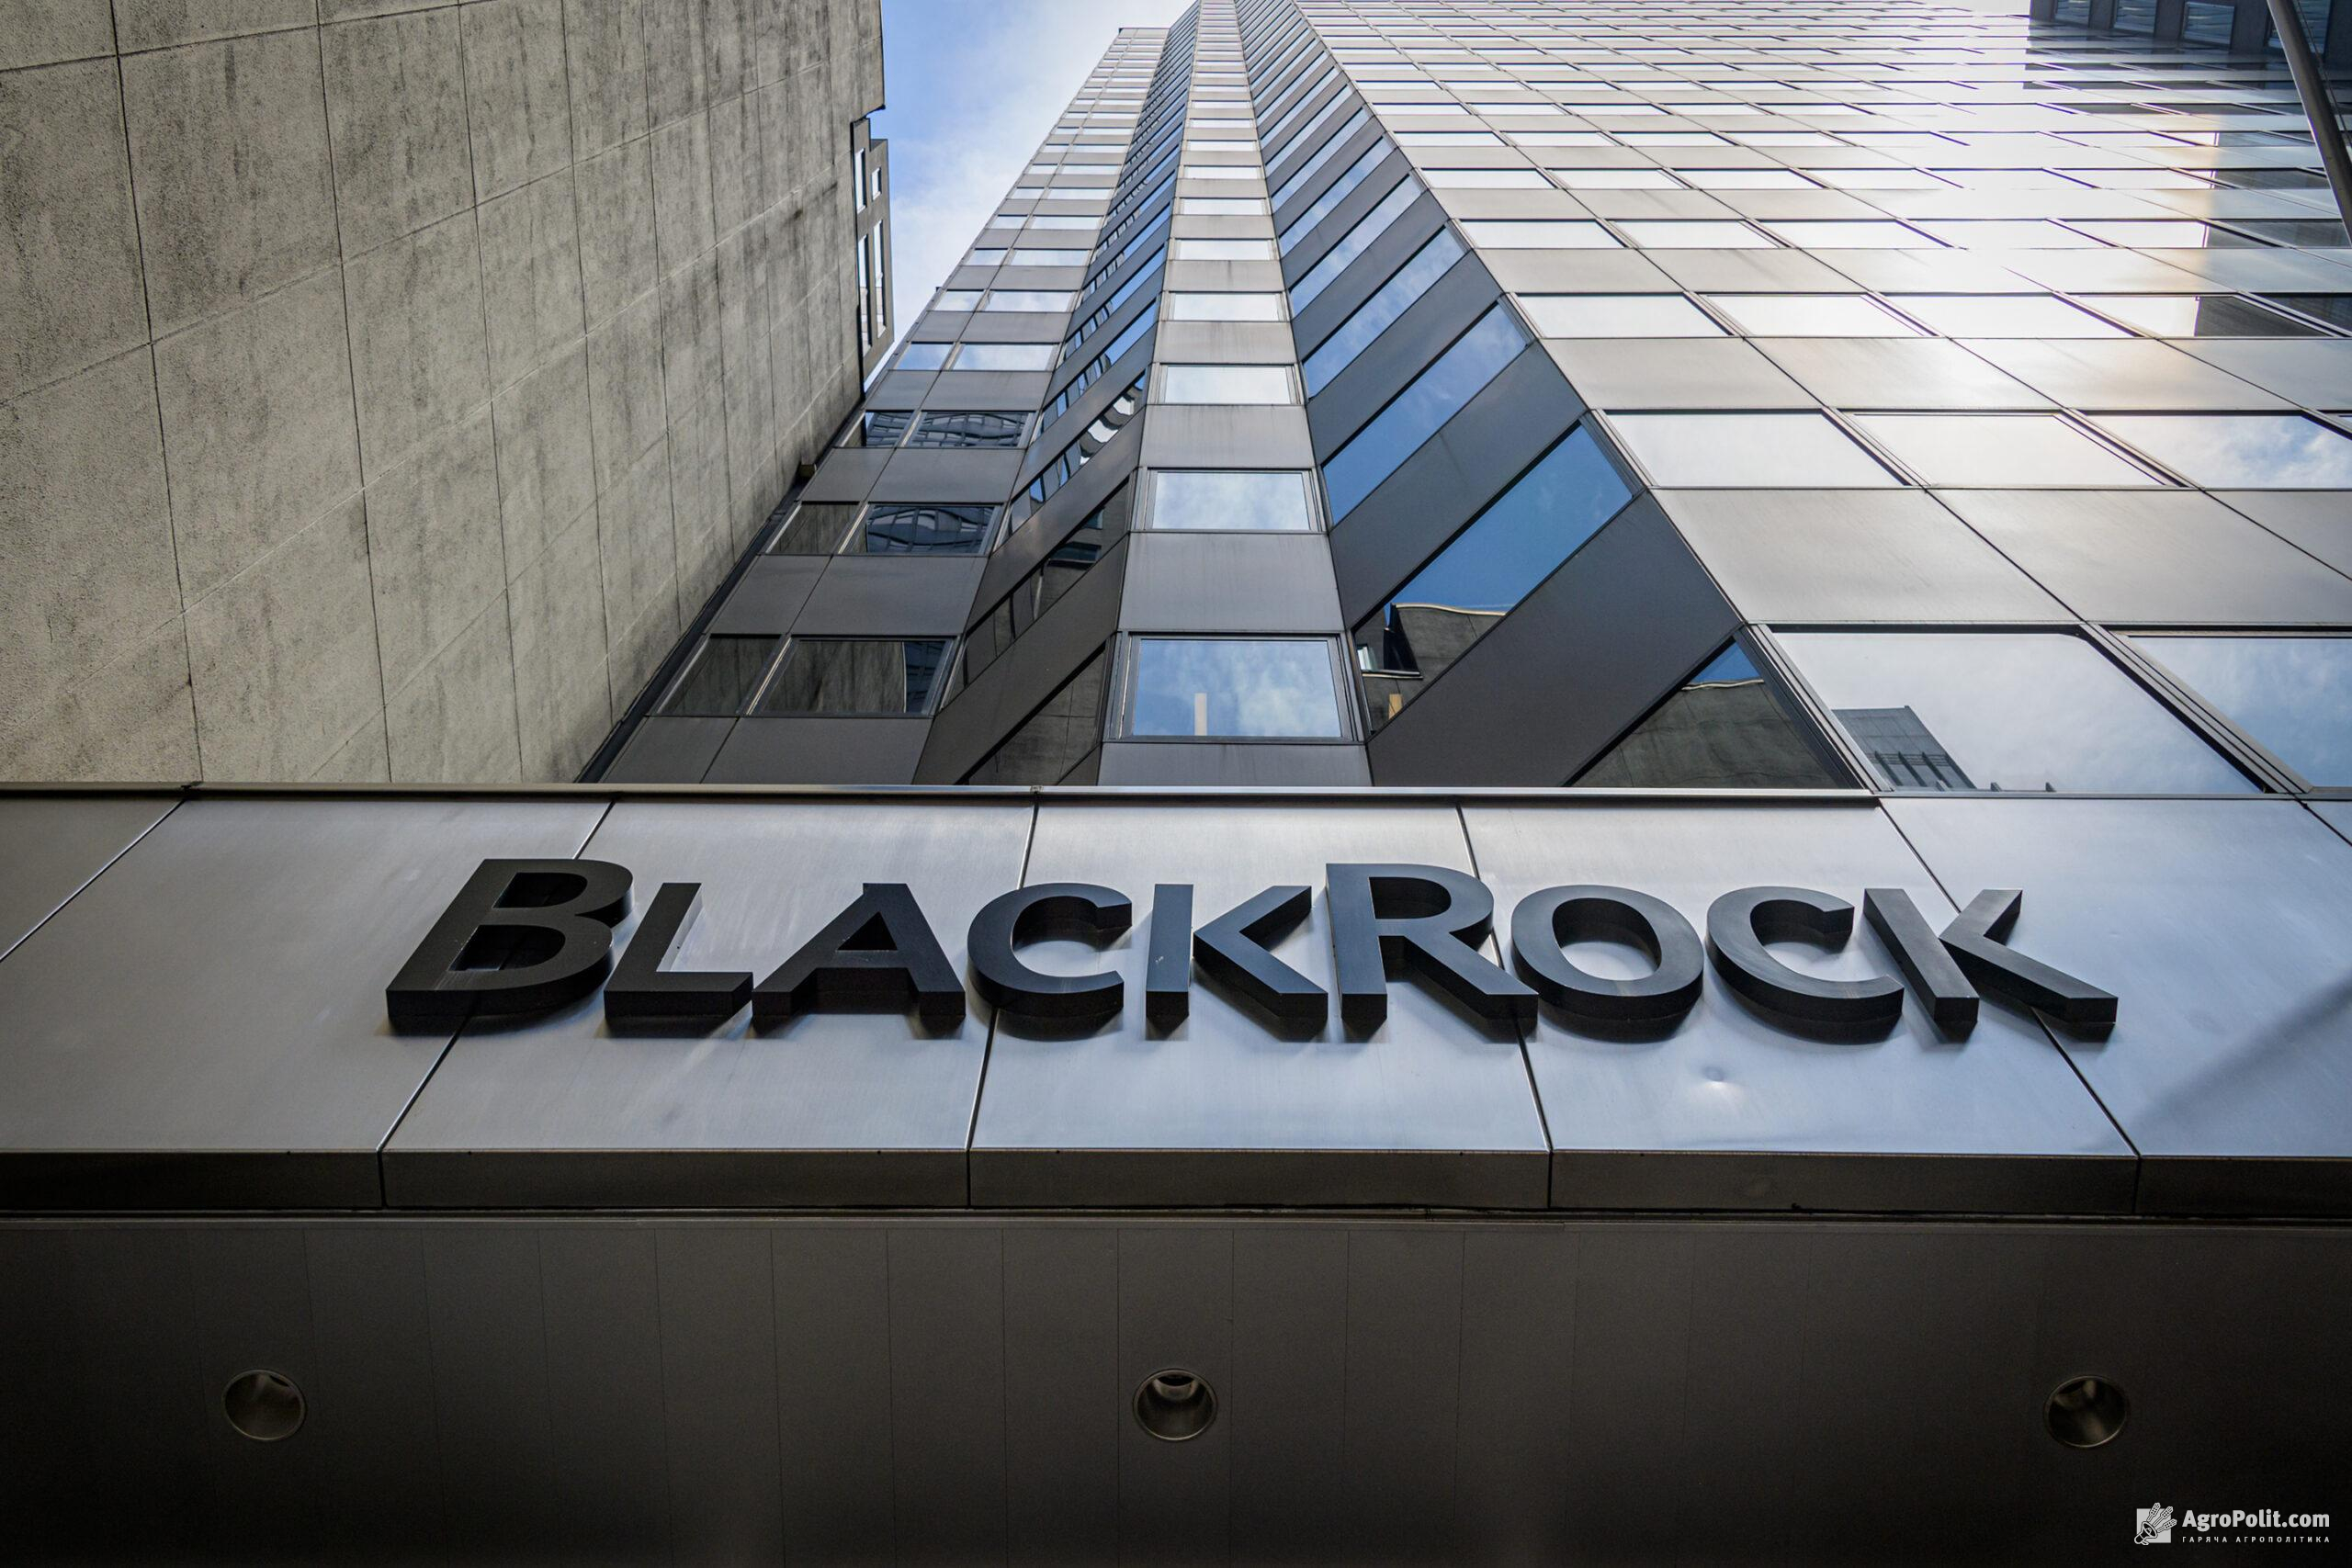 BlackRock консультуватиме Мінекономіки при розробці дорожньої карти для залучення інвестицій